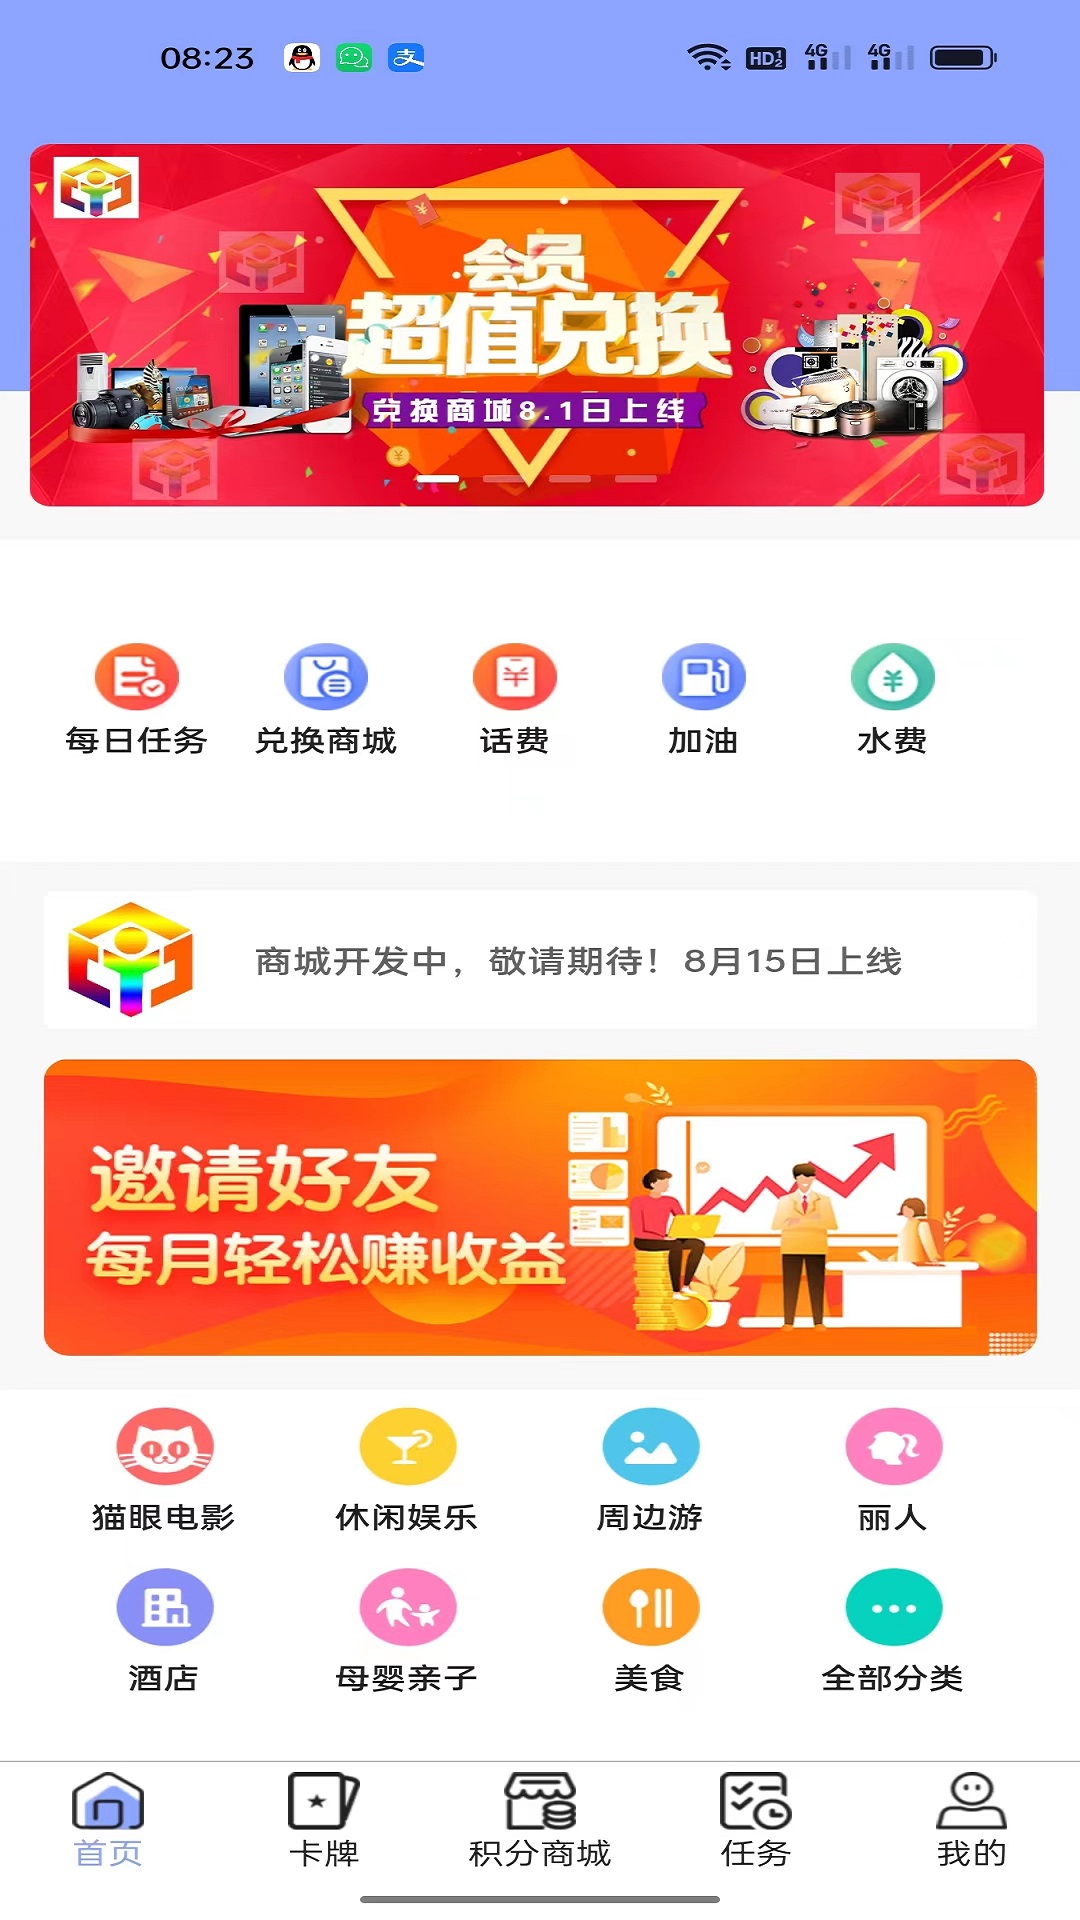 宇虹创业app下载,宇虹创业app安卓版 v1.0.2